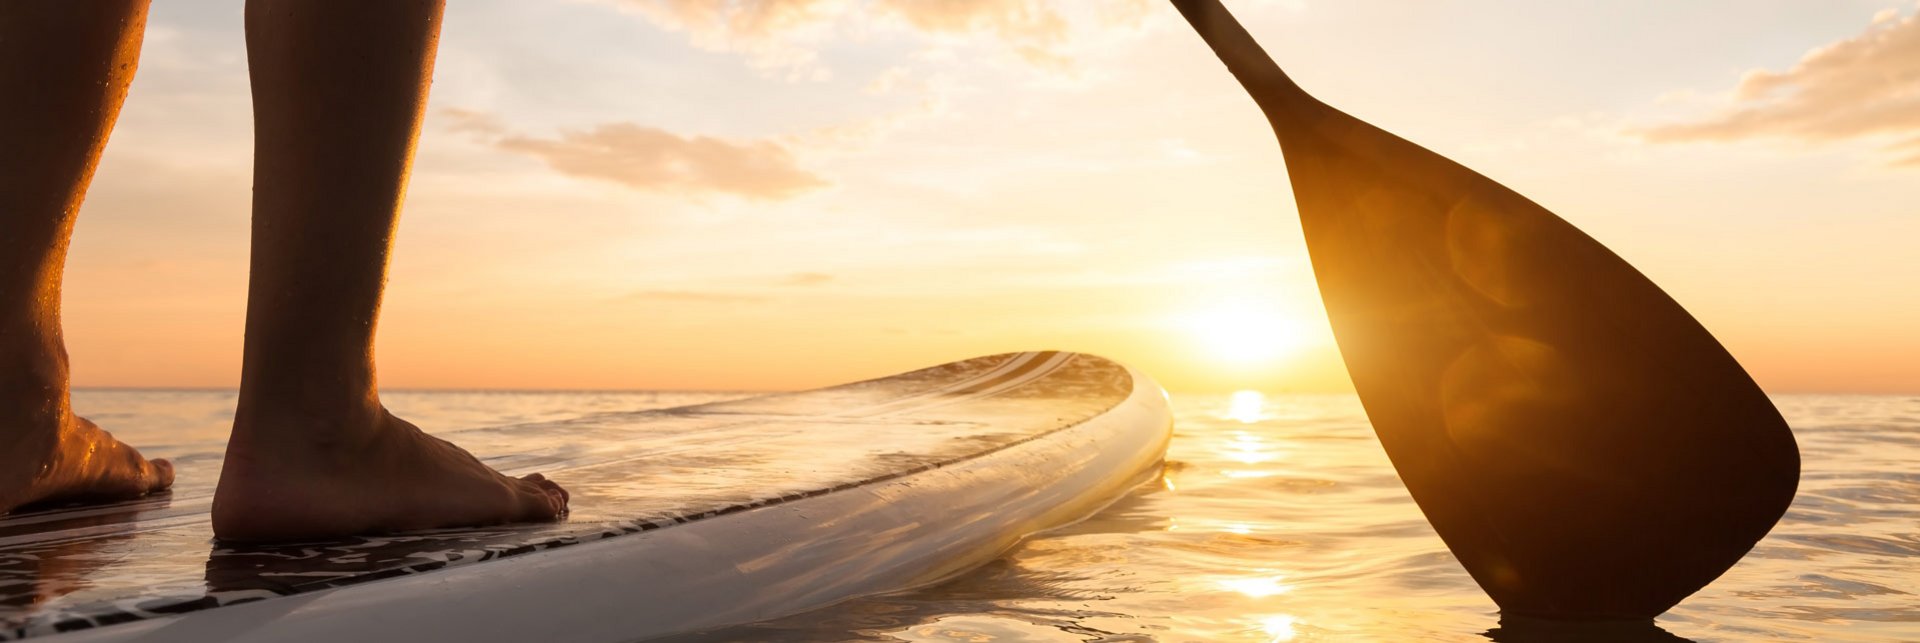 Eine Person steht auf einem SUP Board und paddelt der Sonne entgegen.